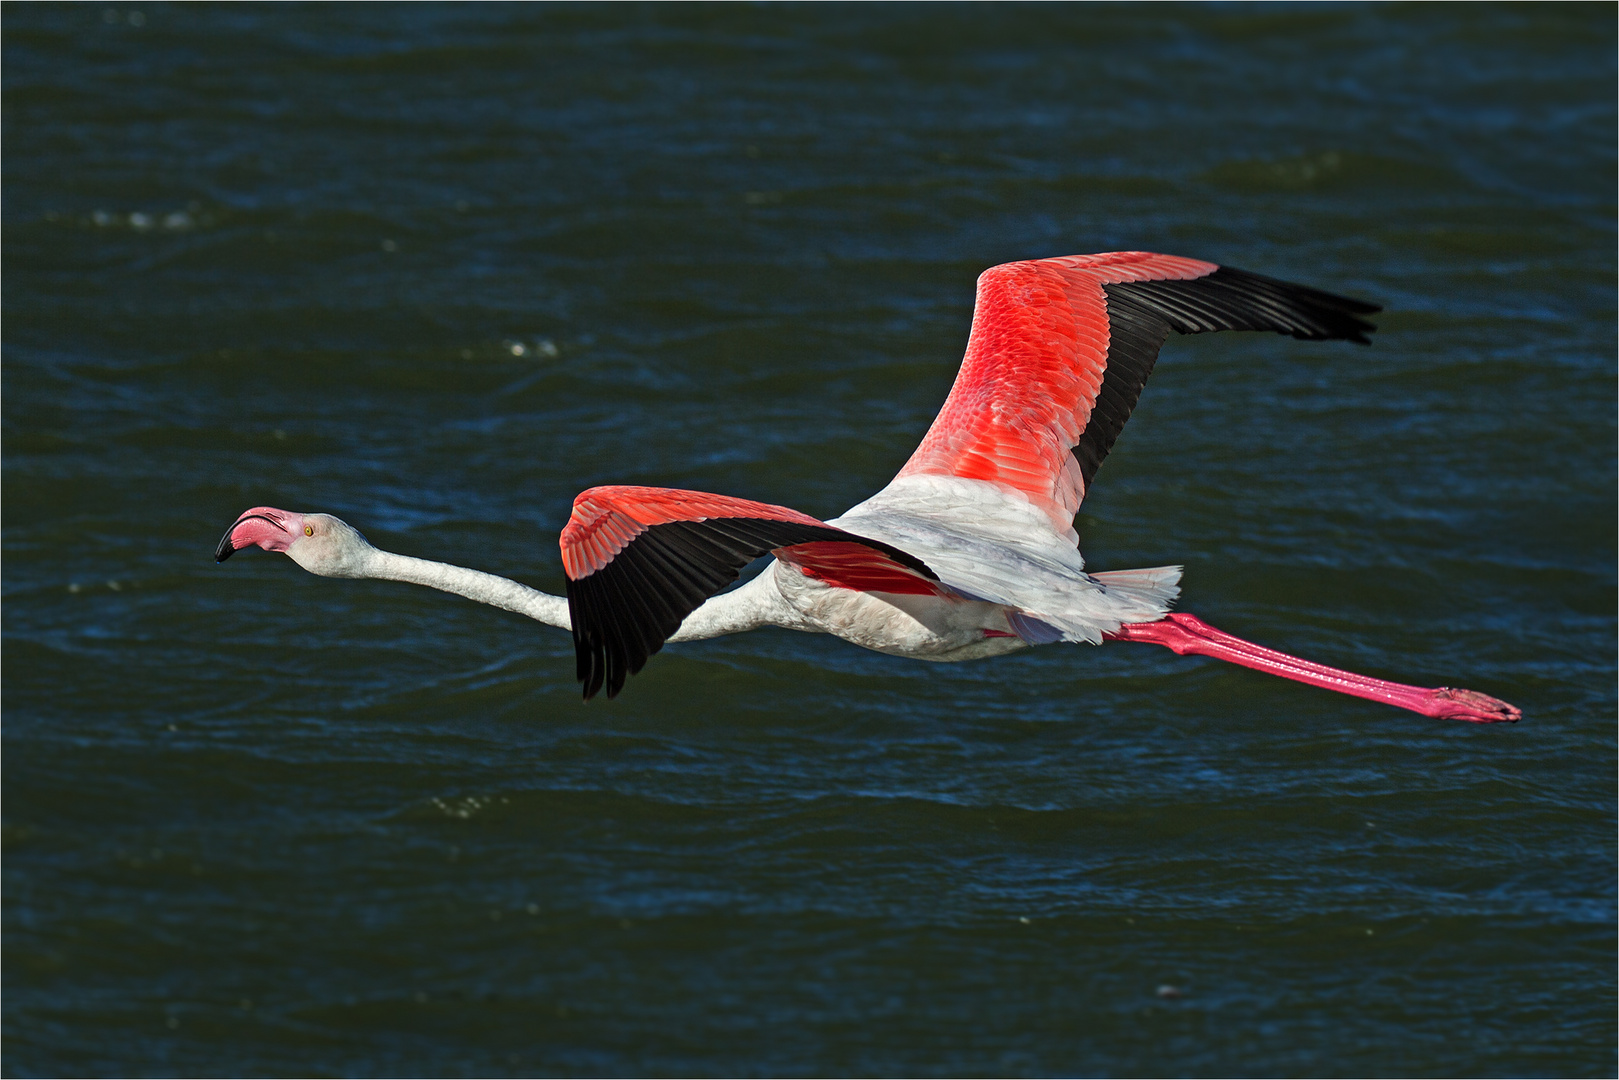 Flamingo im Flug